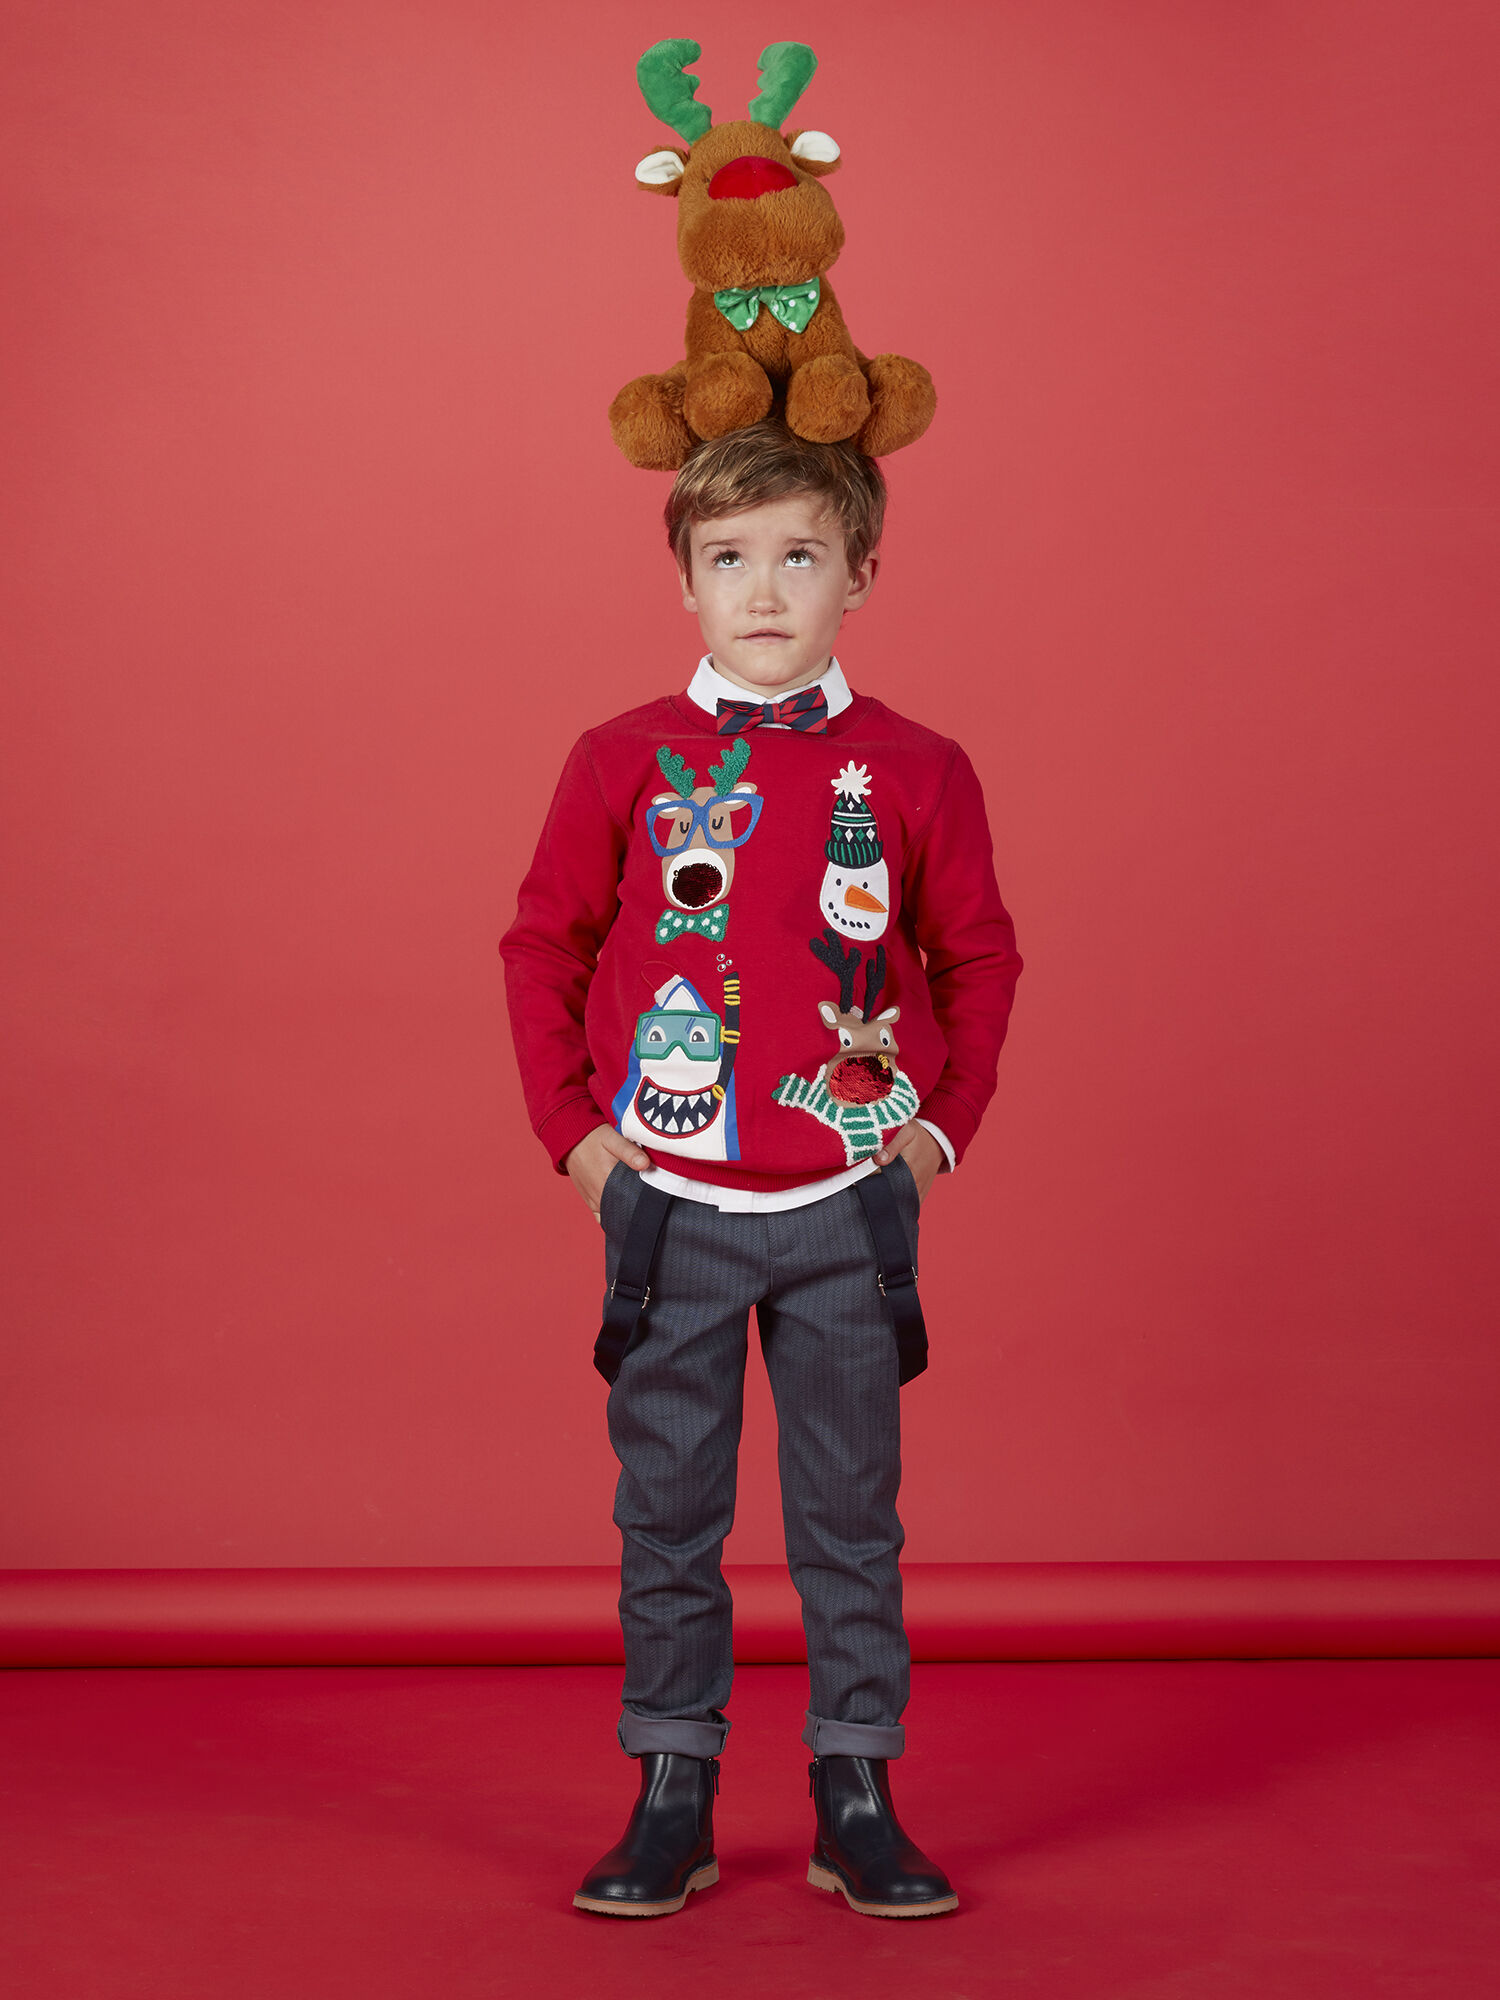 Bébé Sweat-Shirt Noël Pull-over pour Enfant Épais Sweatshirt Tops pour fille et garçon Vine 4 années 